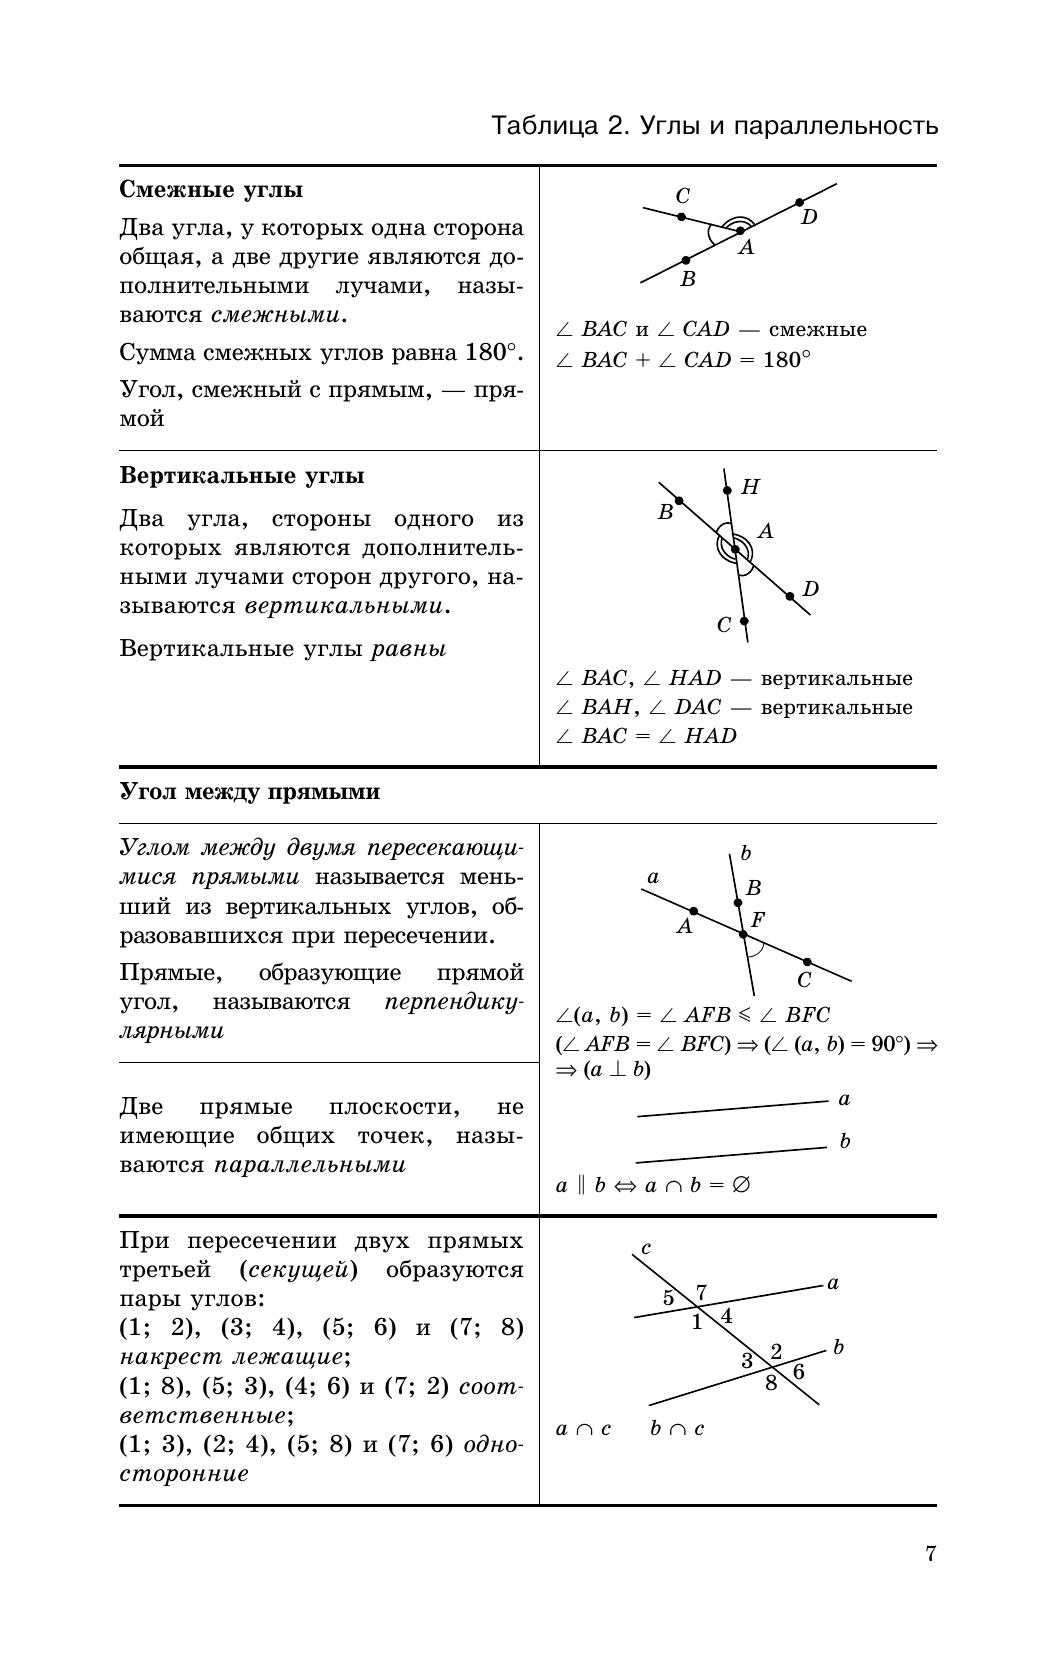 Геометрия в таблицах. 7-11 классы. Справочное пособие 4